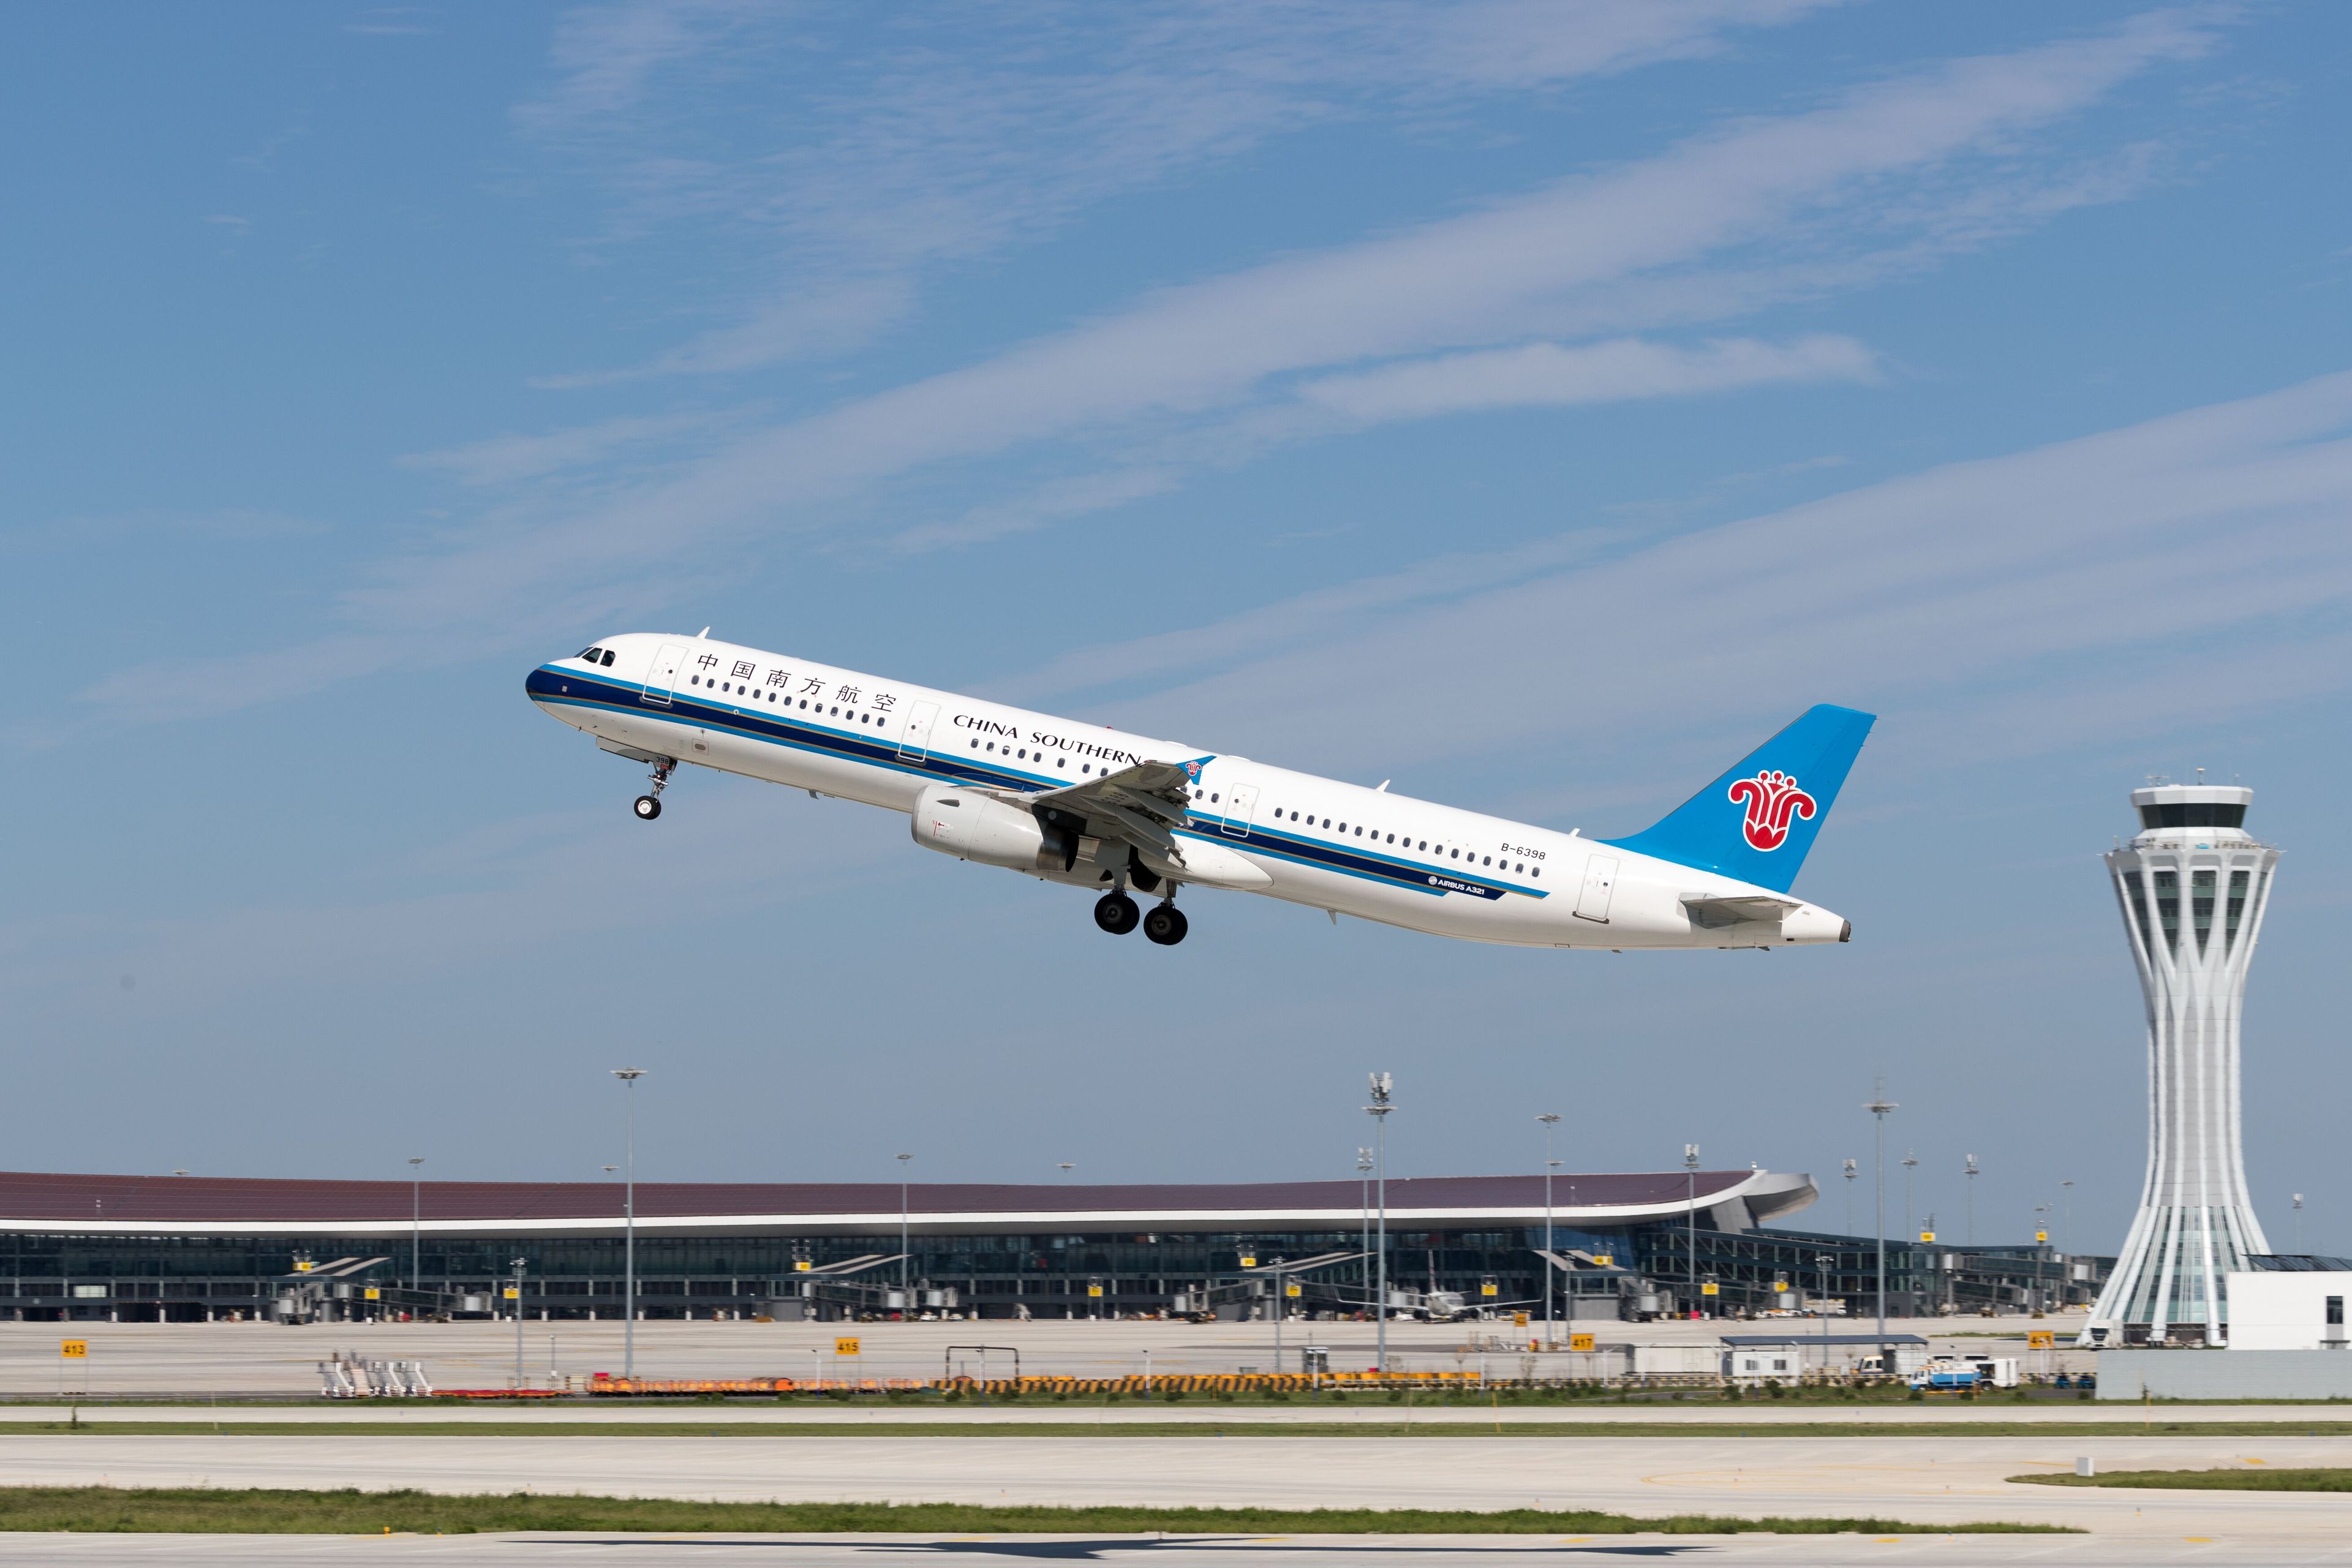 10月25日,一架南航飞机从北京大兴机场起飞.图片来源:南航供图